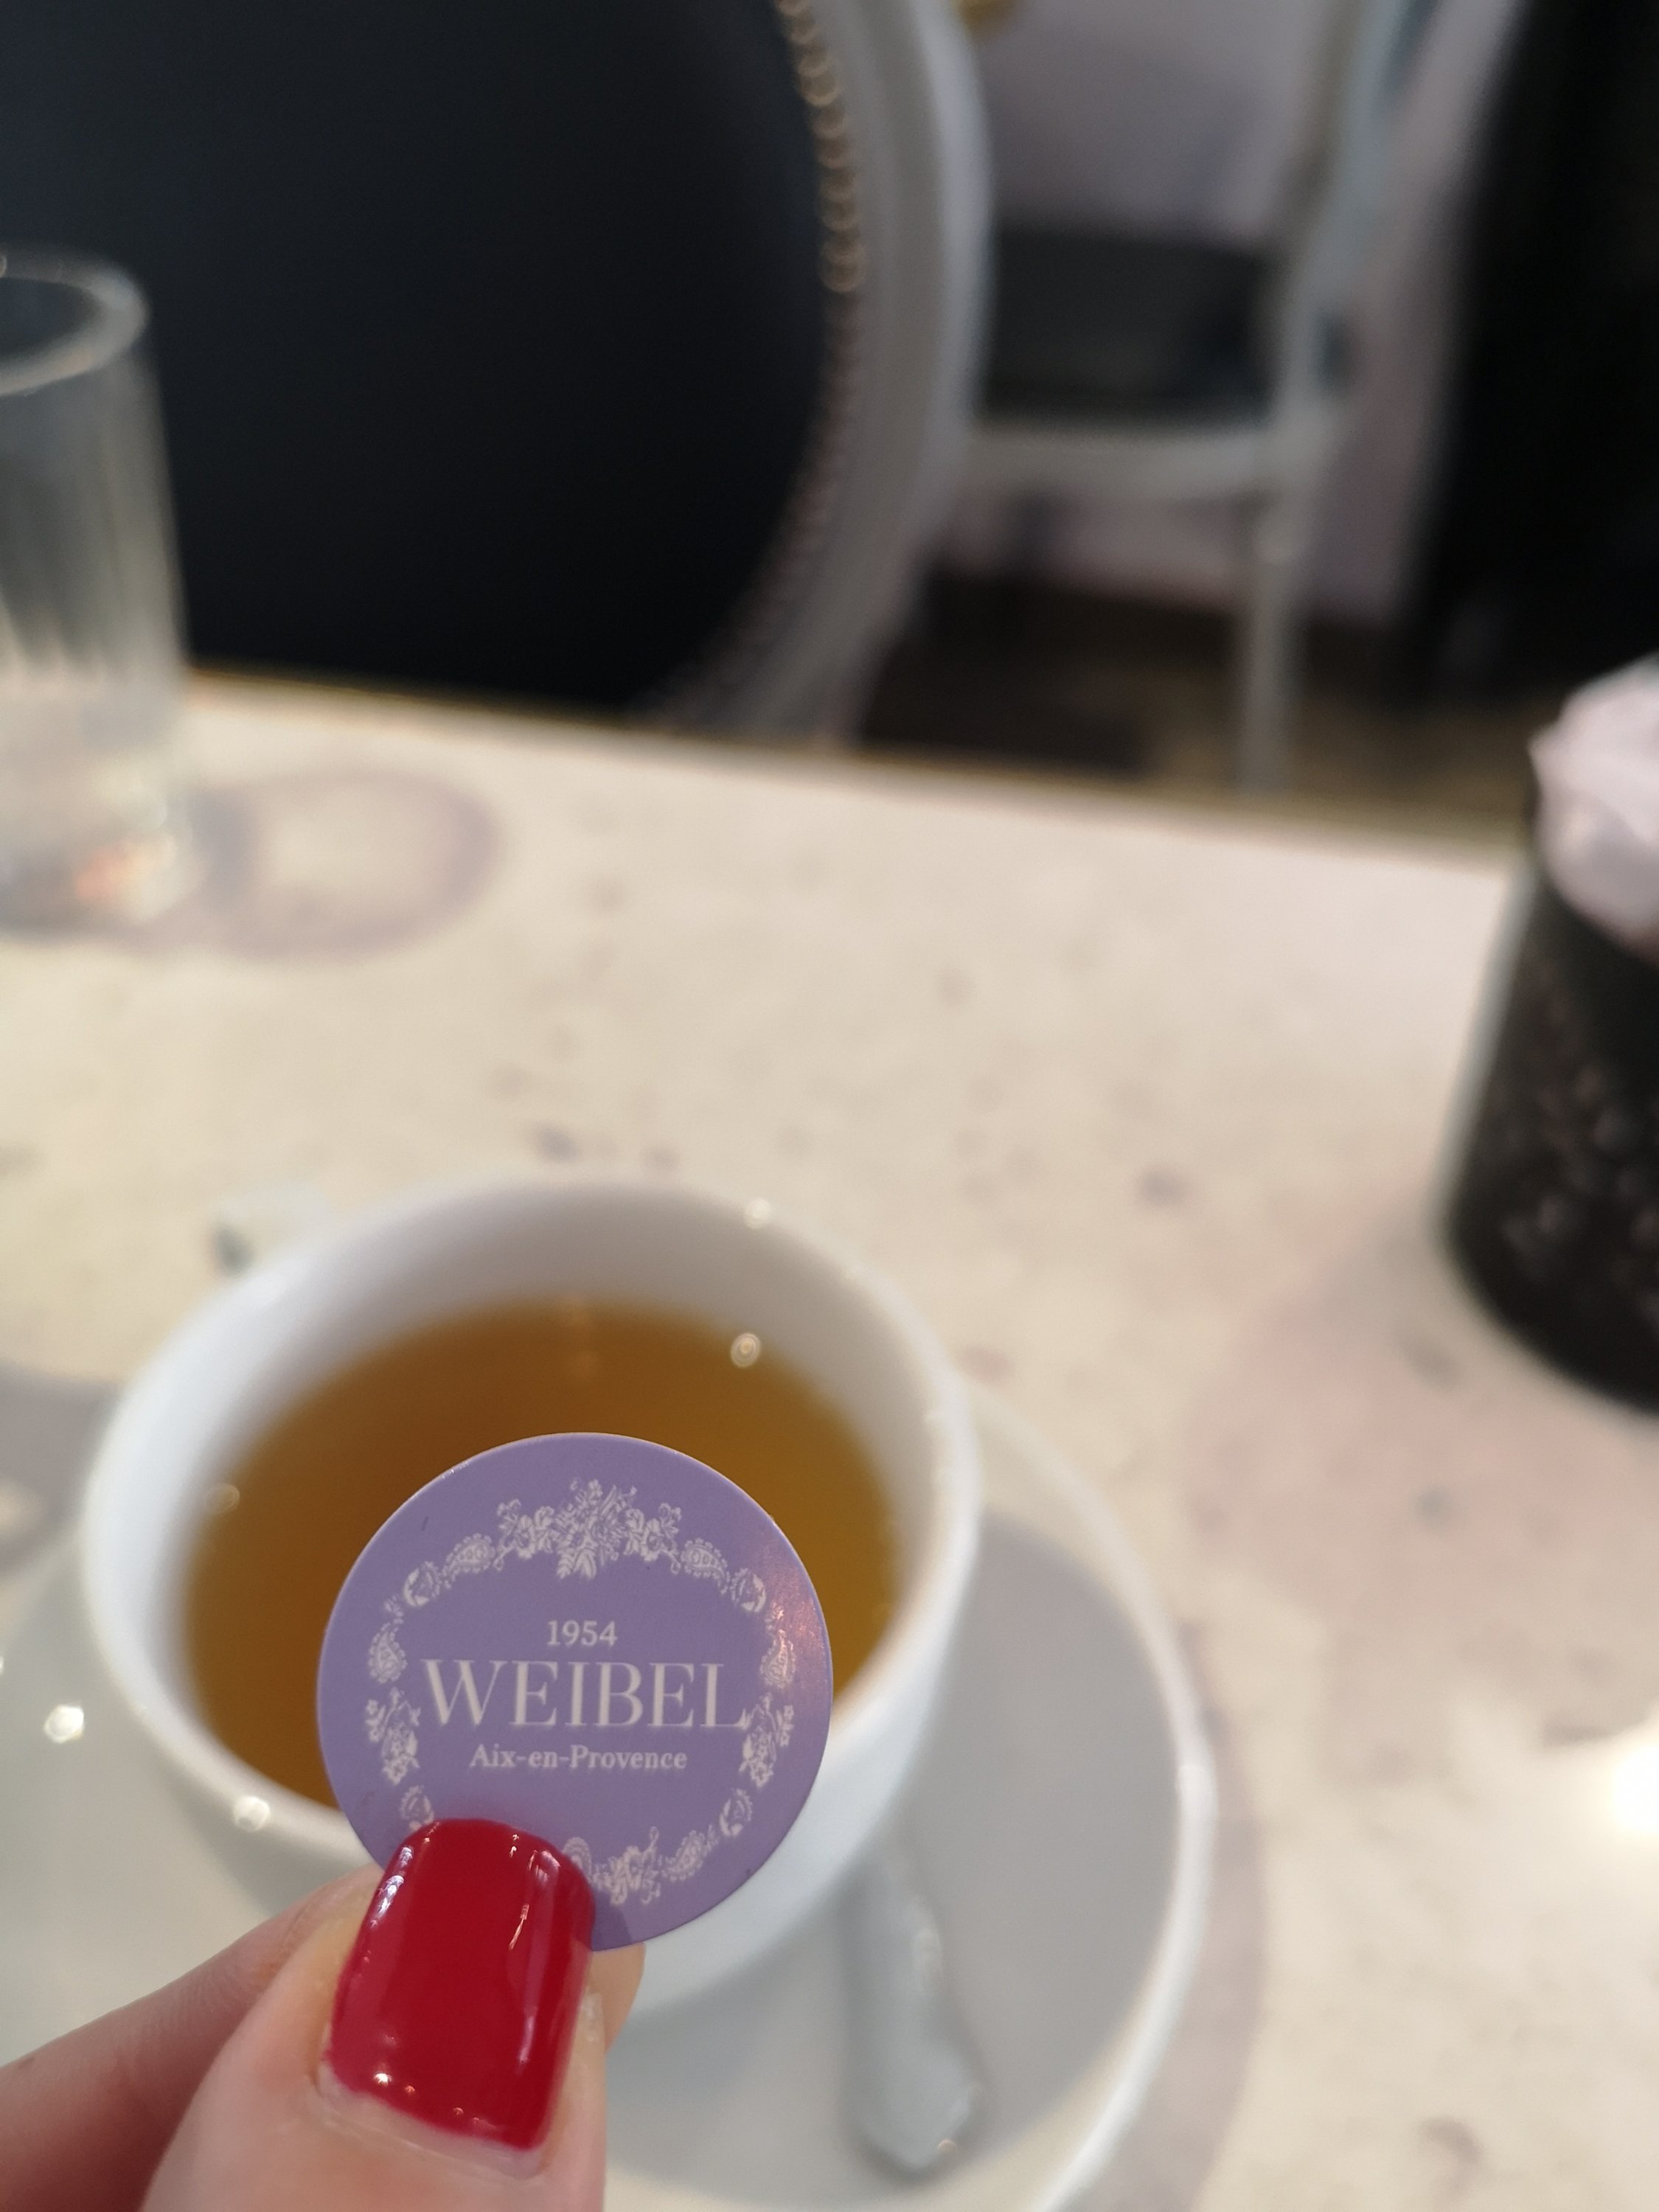 בית תה שכדאי לטעום בפרובנס וברביירה הצרפתית